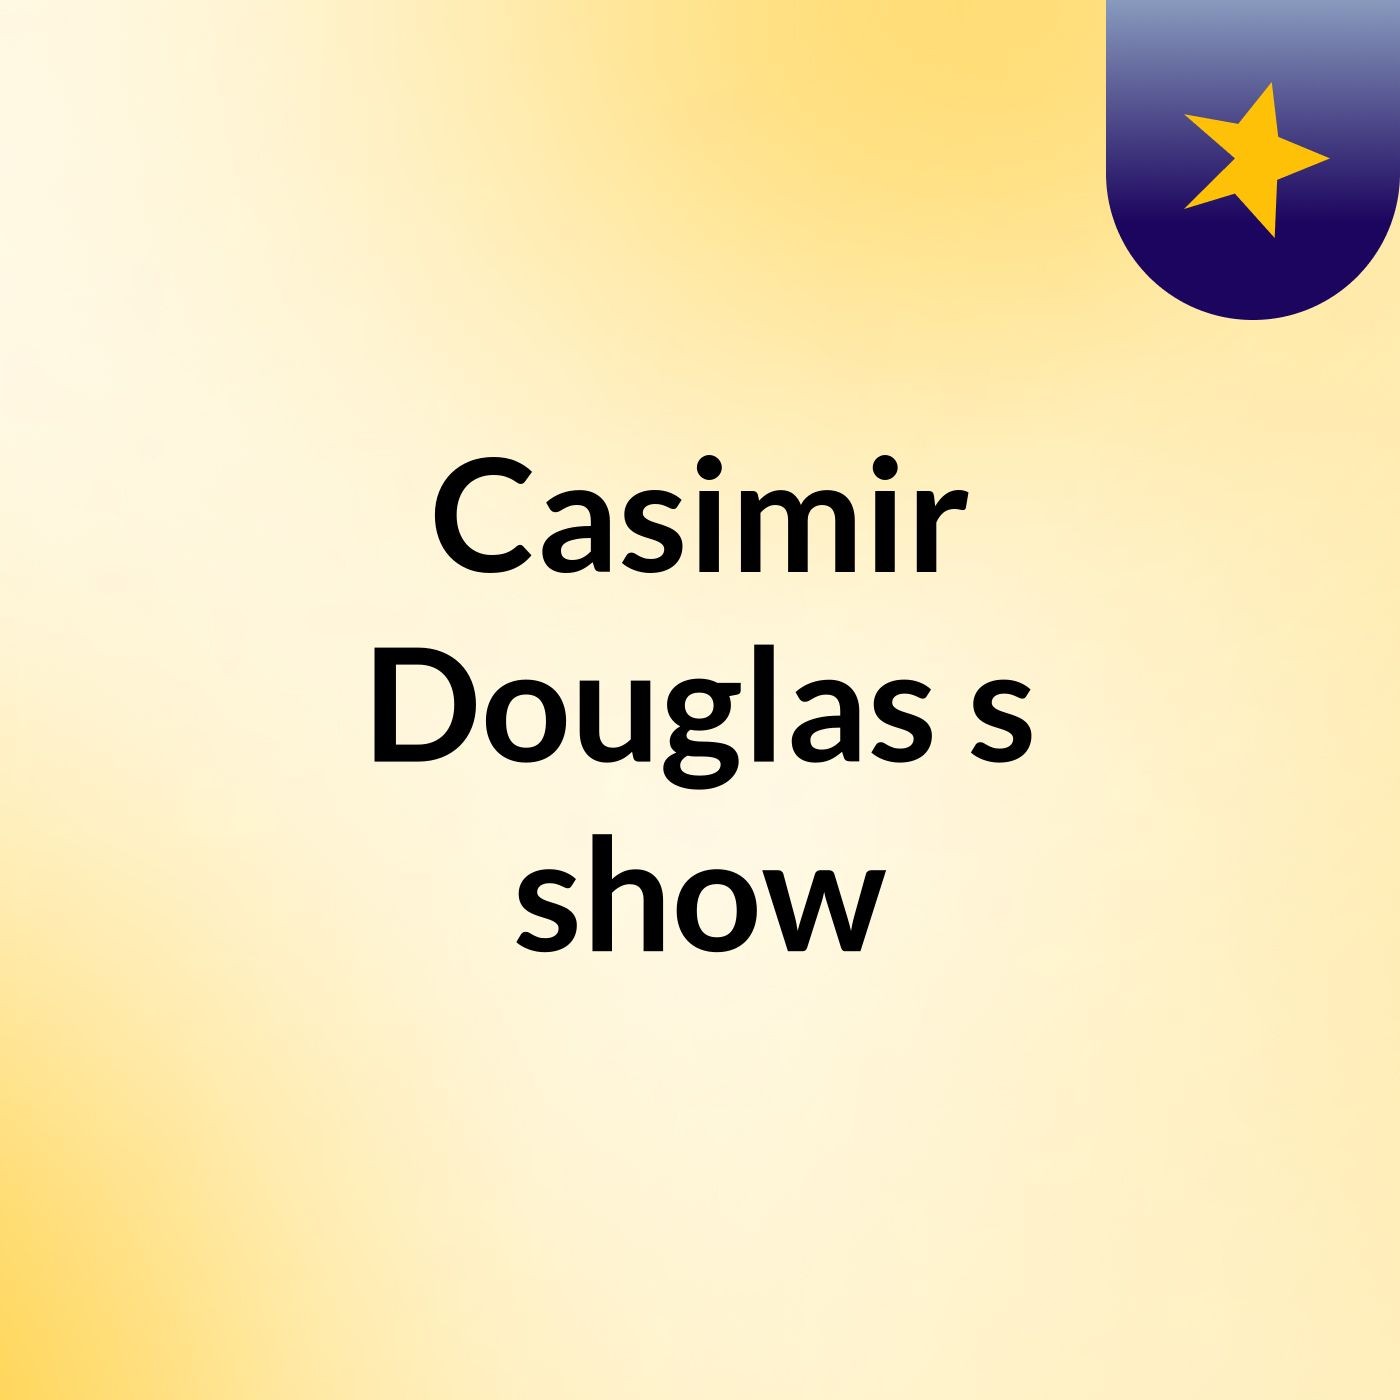 Casimir Douglas's show